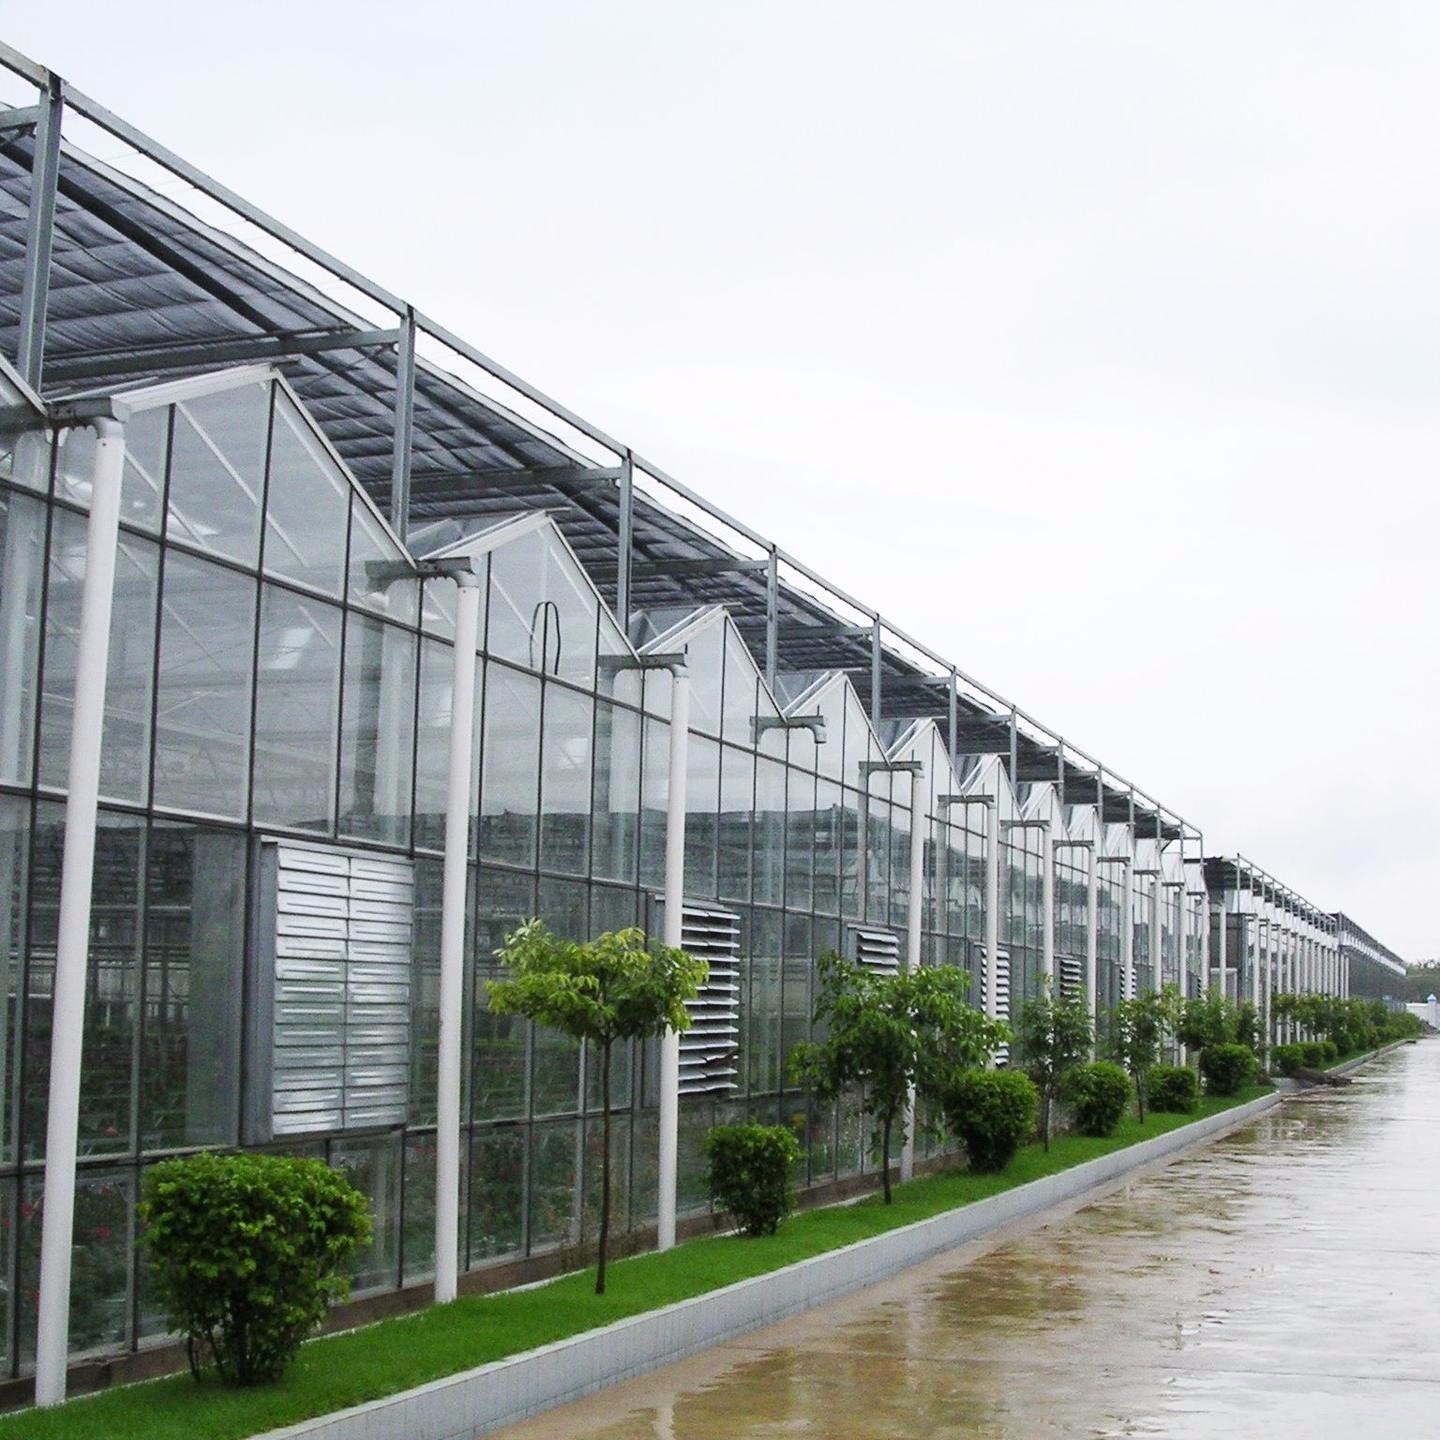 潍坊建达温室 温室蔬菜大棚 加工蔬菜玻璃温室 潍坊玻璃温室图片